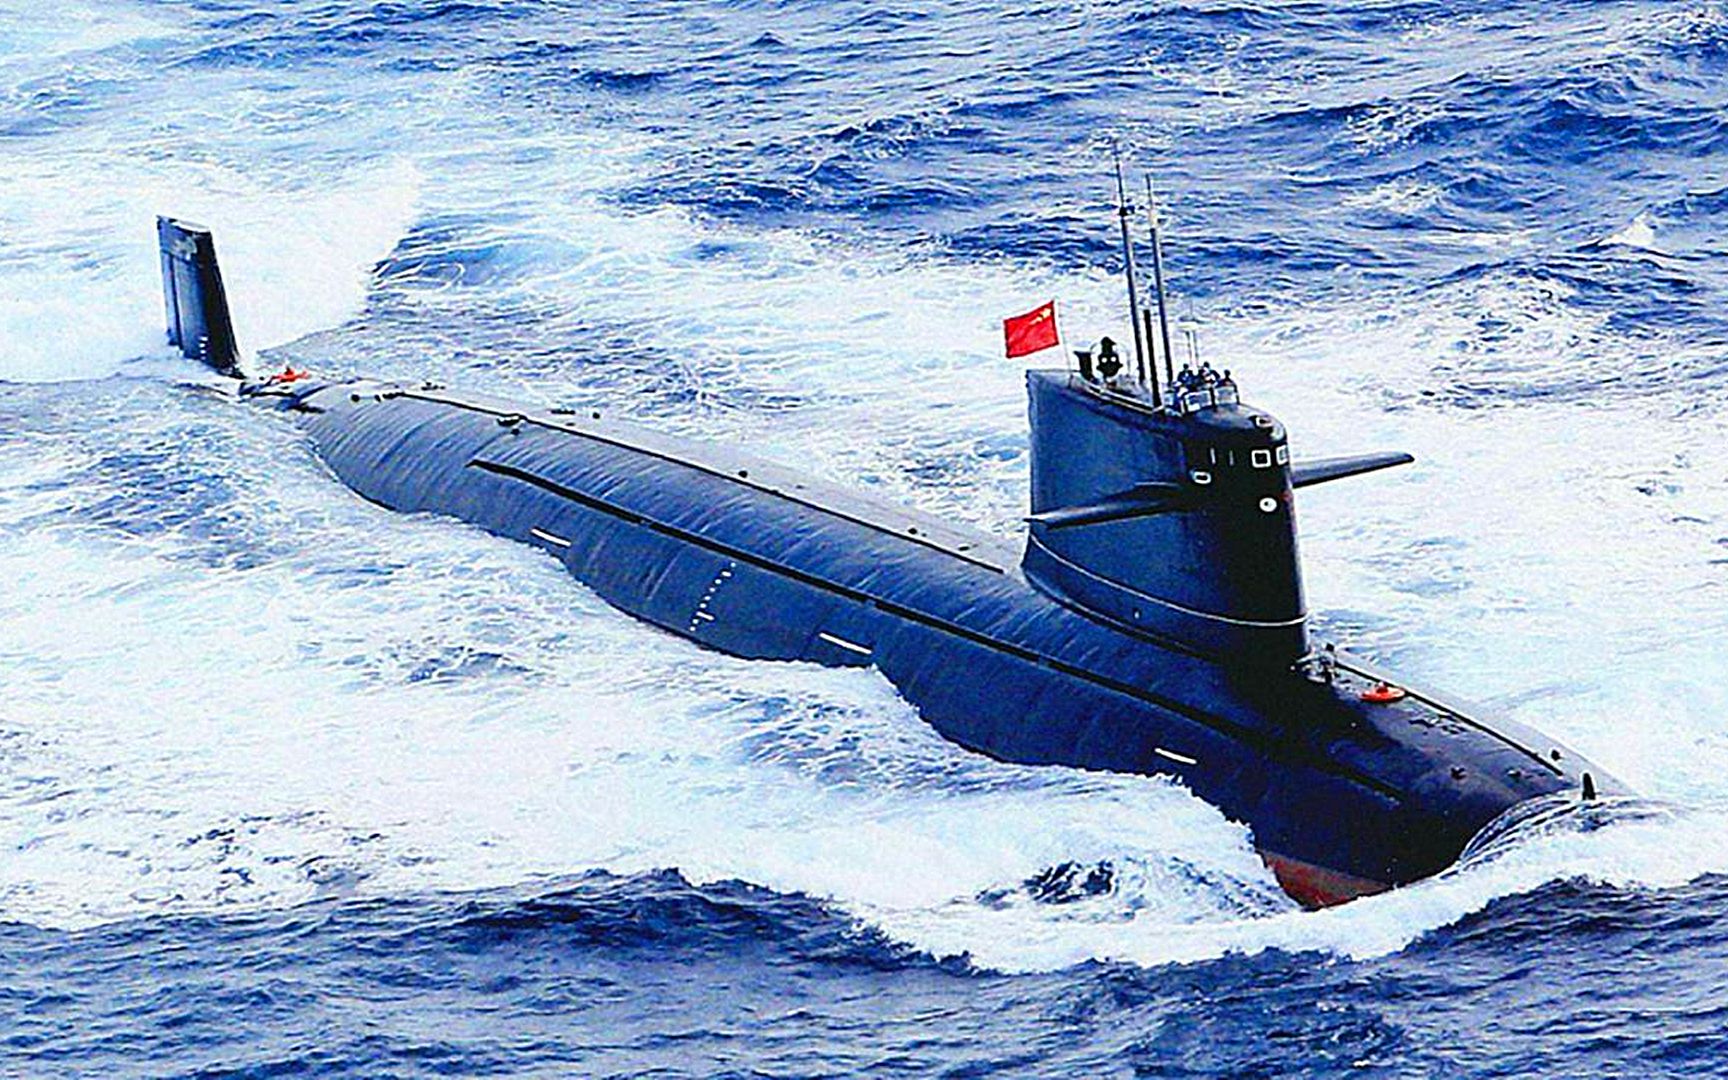 095型核潜艇多个信息证实服役?性能追平美军核潜艇,龟背还在吗